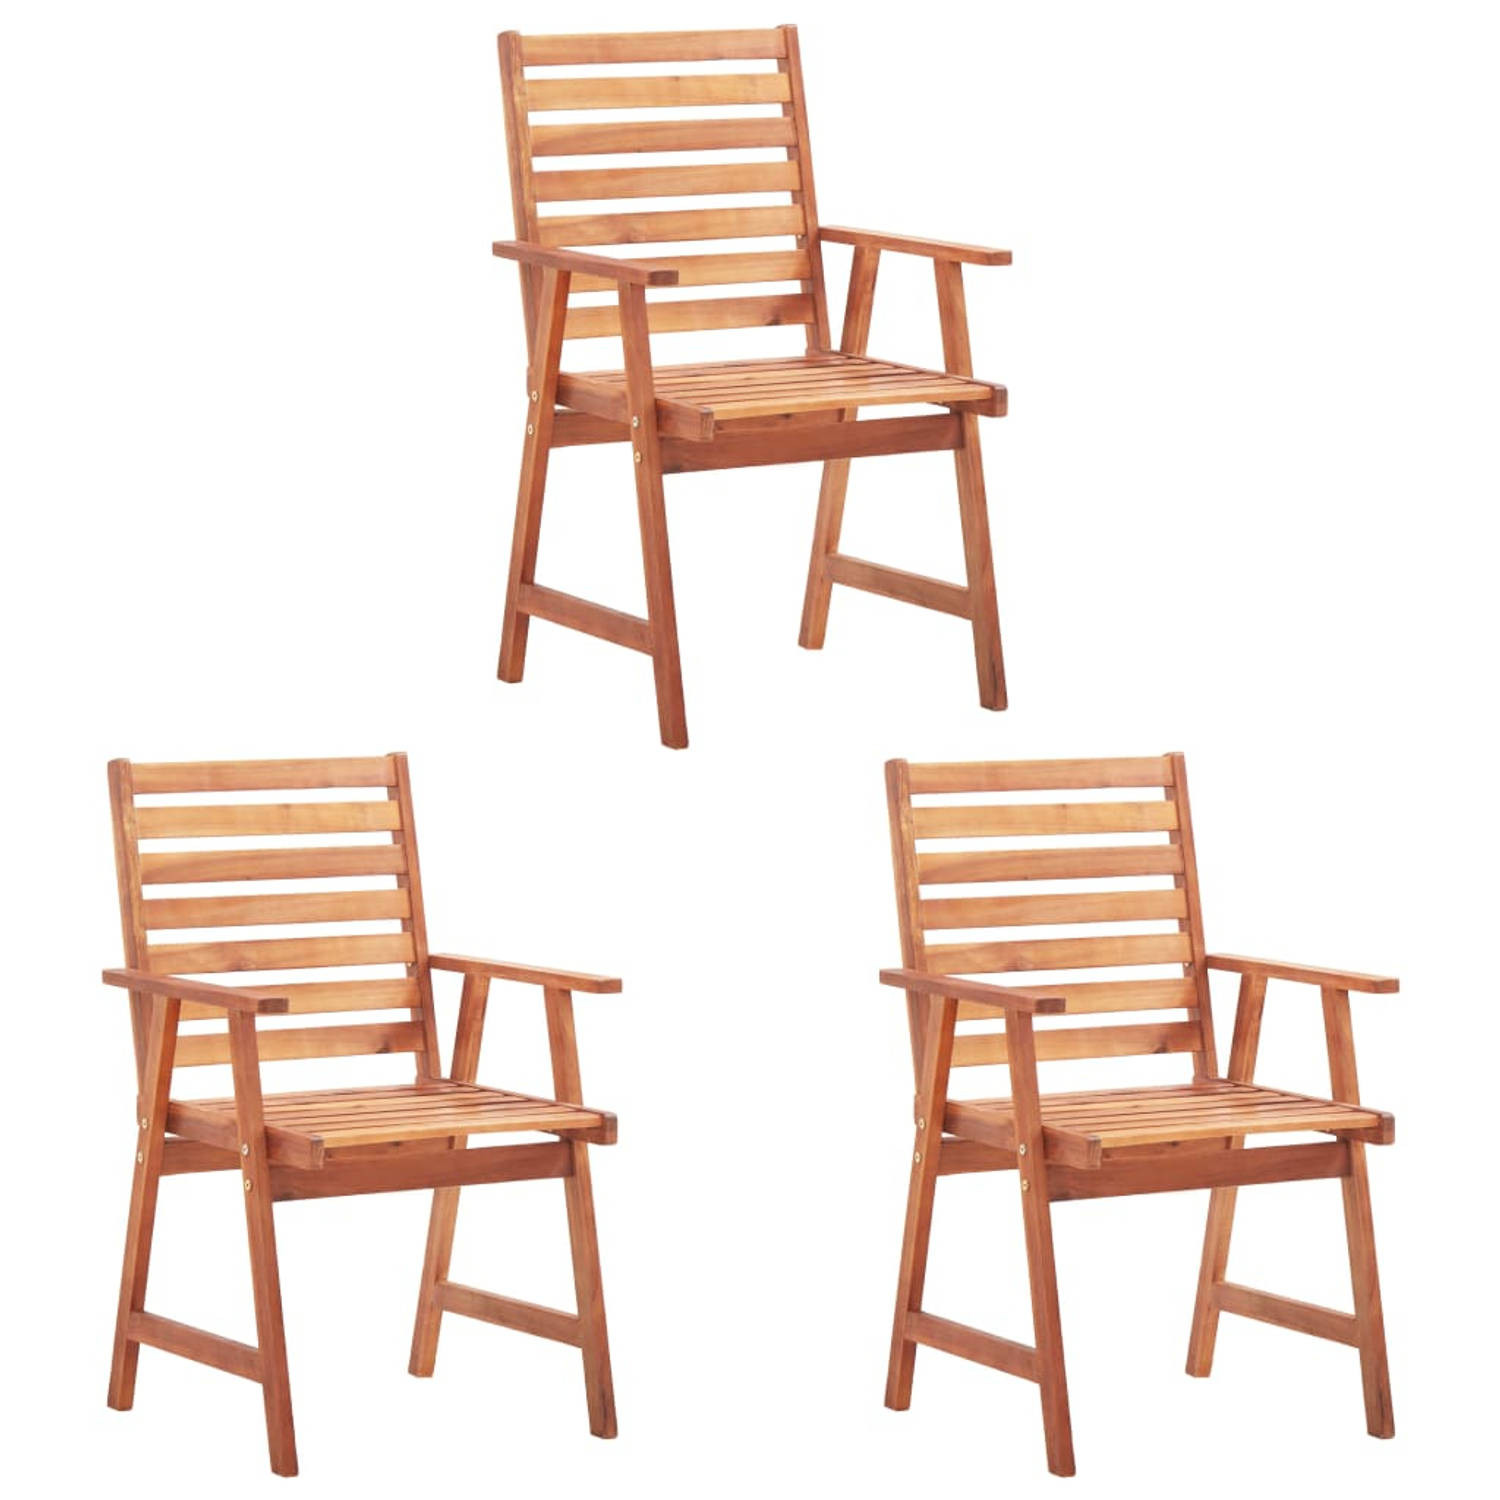 The Living Store Acacia Eetstoelenset - 3 stoelen met kussen - Grijs ruitpatroon - 56x62x92cm - Waterdicht